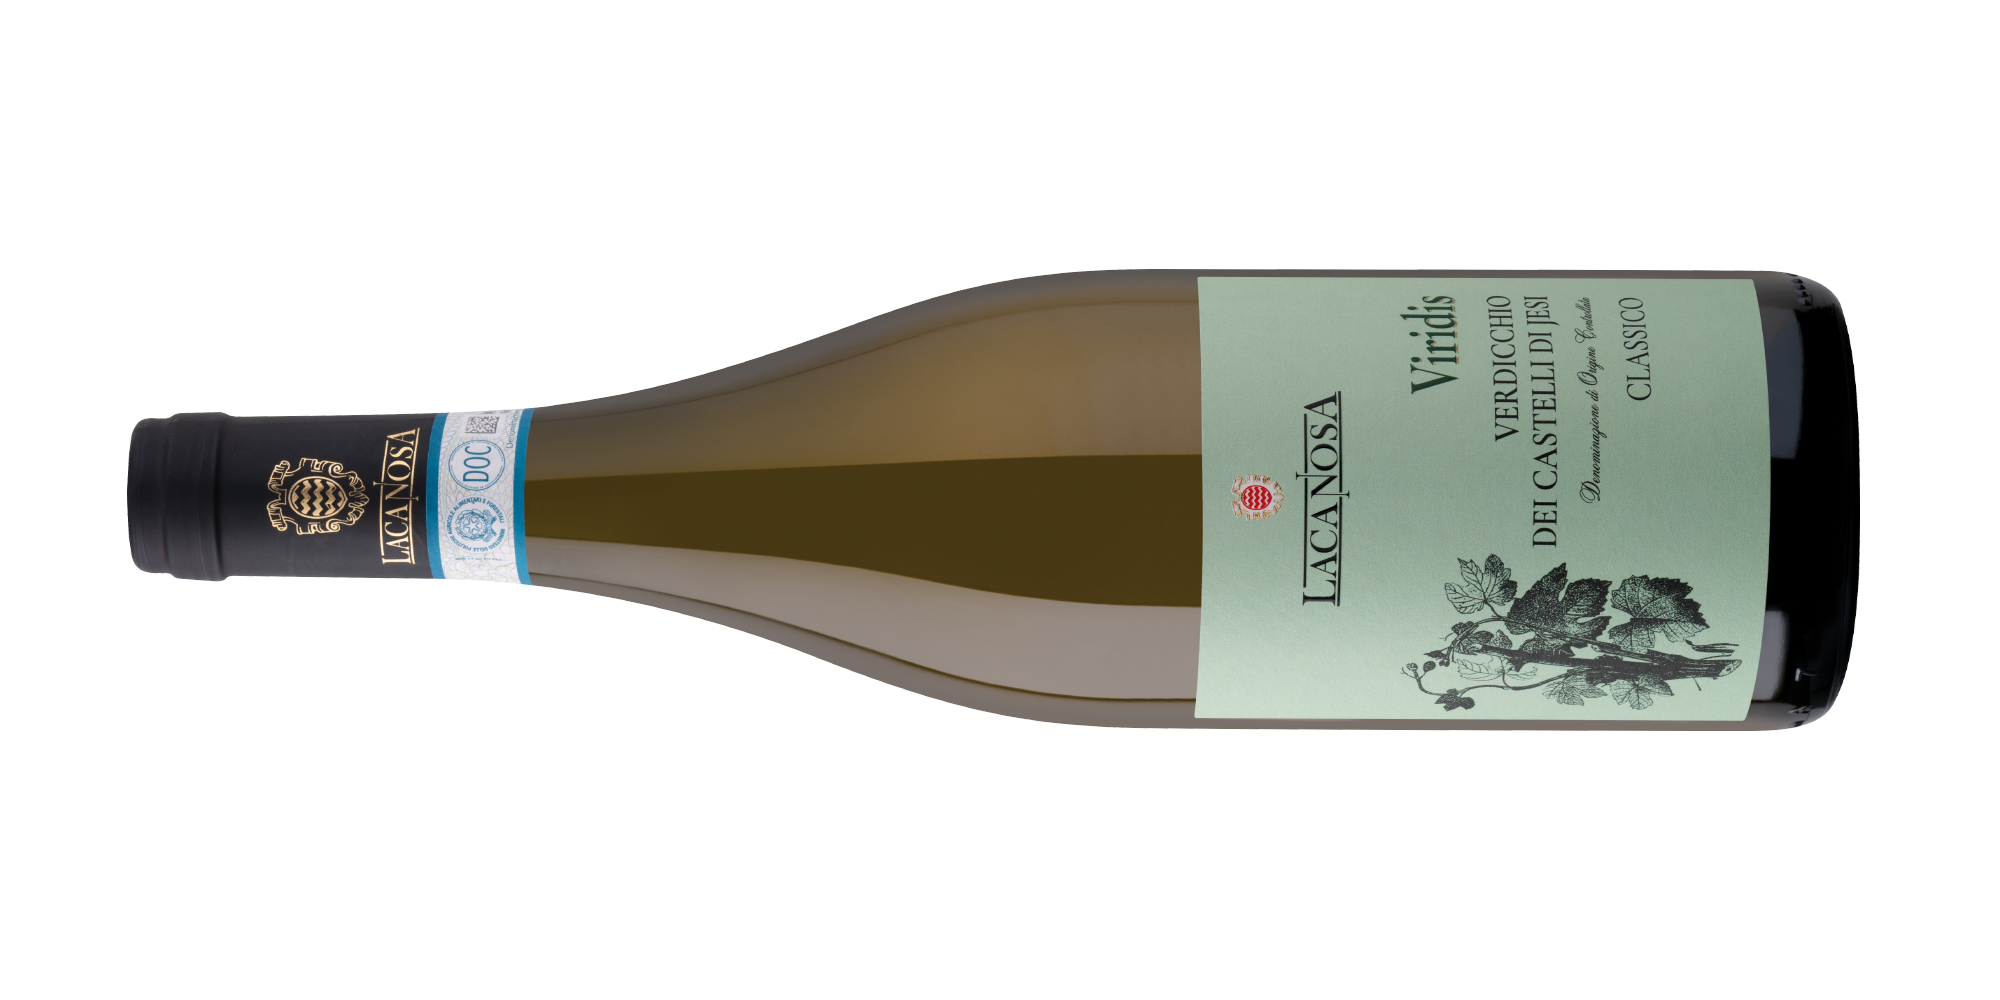 La Canosa Wines - High quality white wine - Viridis - Verdicchio dei castelli di Jesi Classico DOC